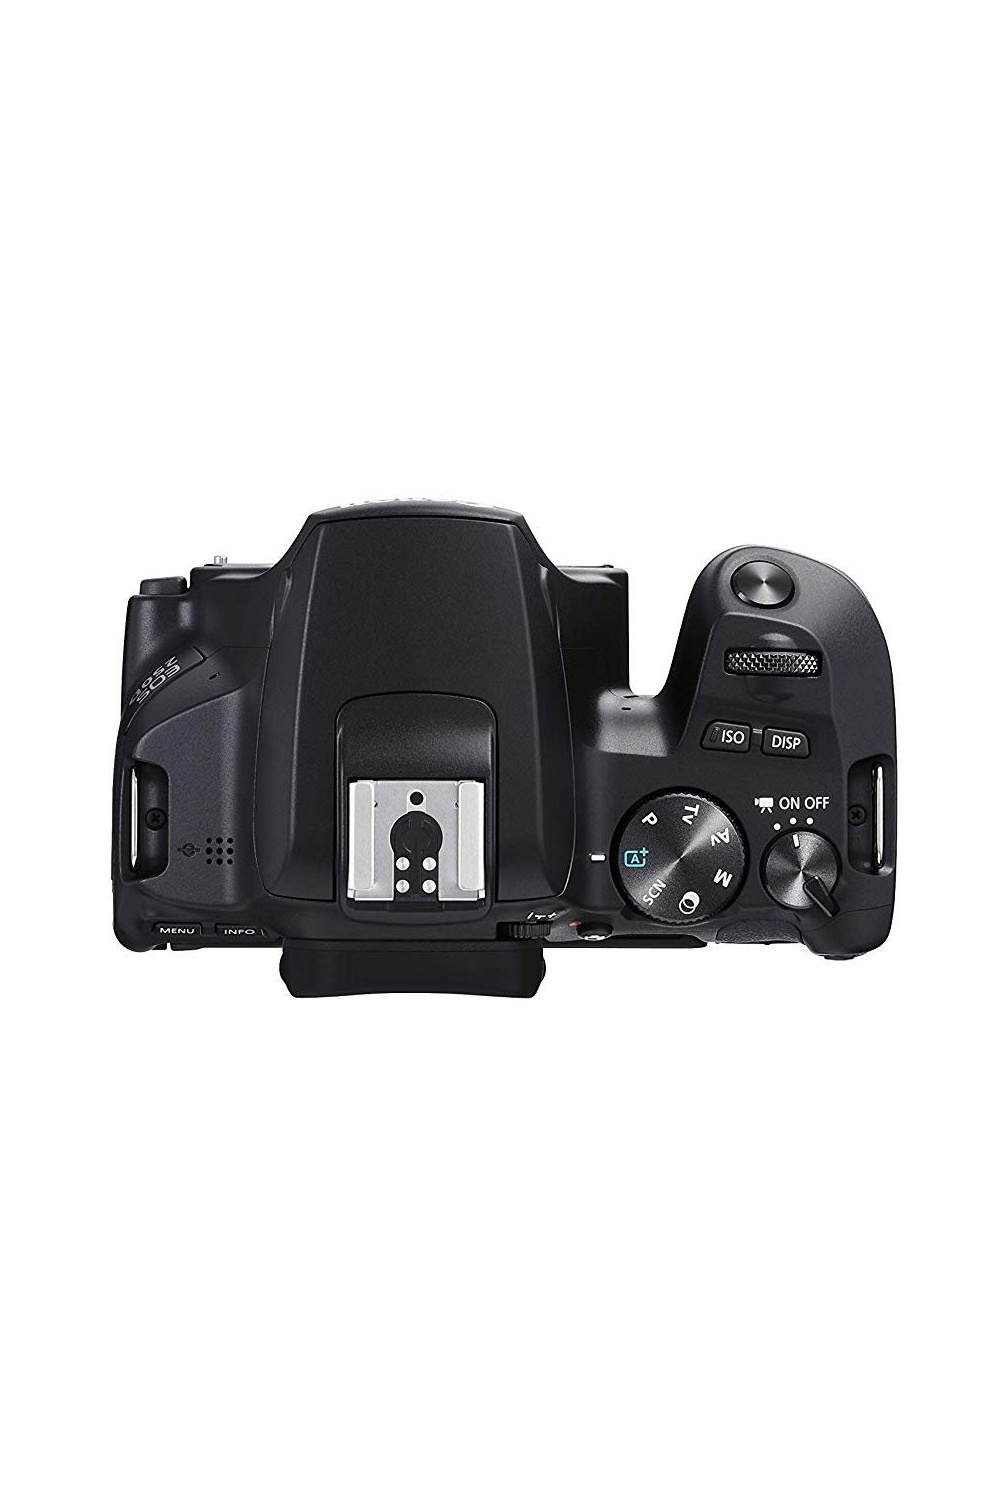 Bild von EOS 250D schwarz + EF-S 18-55 mm F4,0-5,6 IS STM